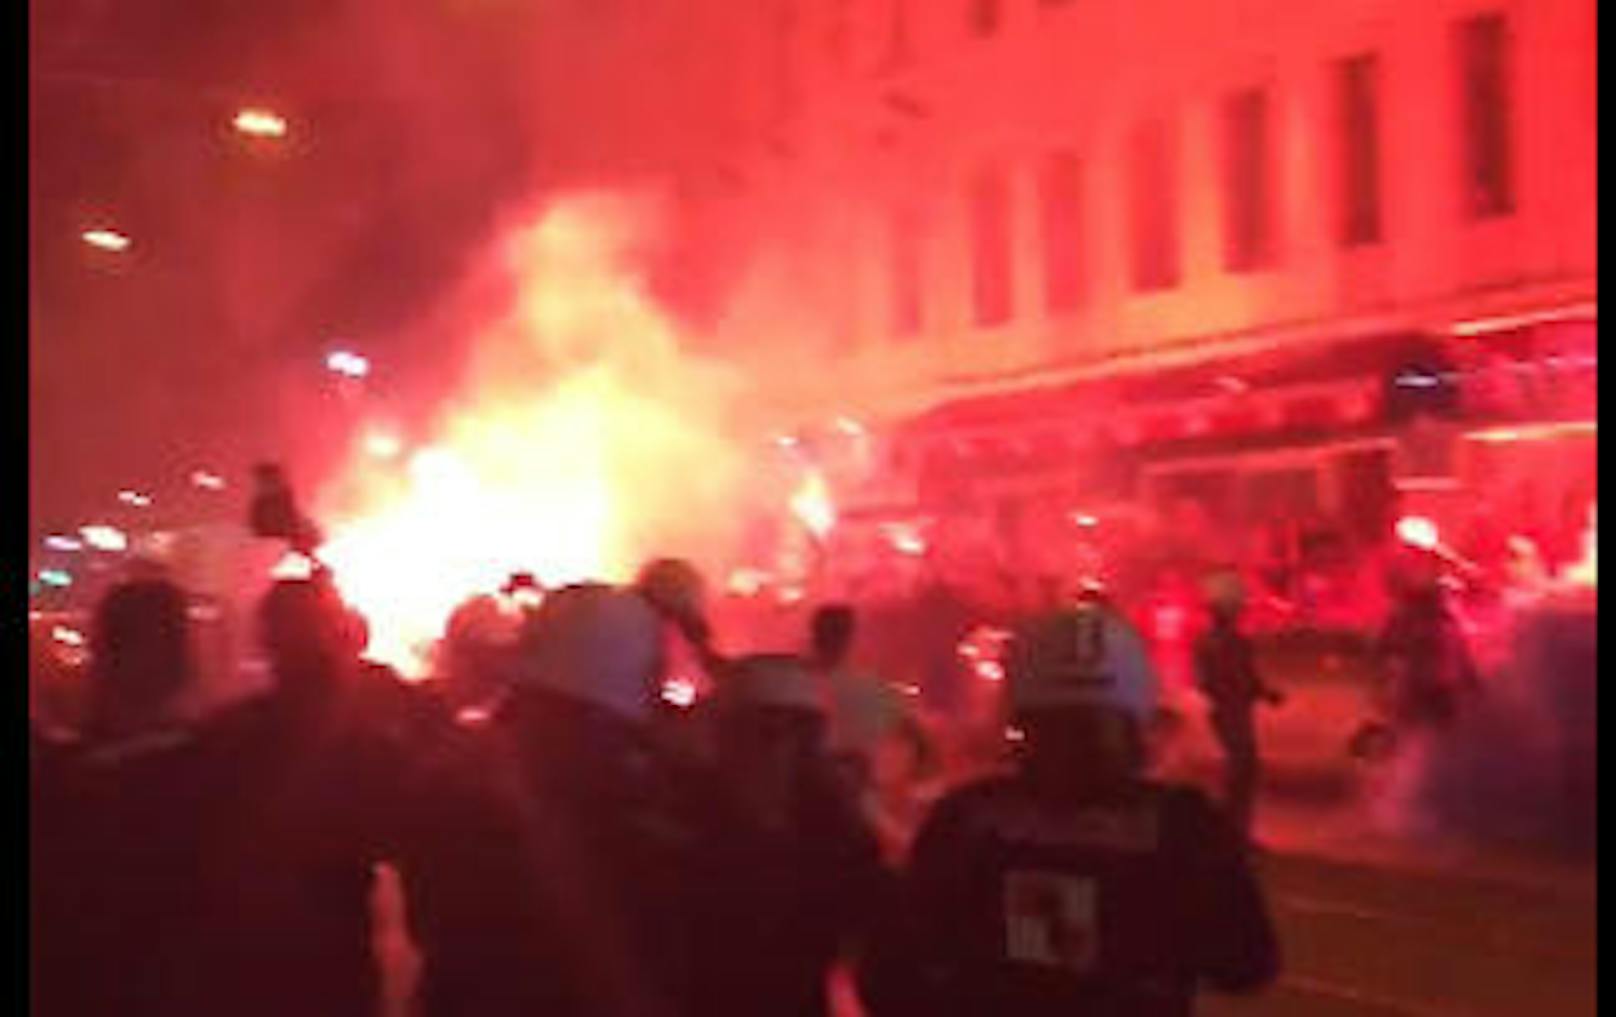 Jubelnde Kroatien-Fans, Bengalen, Böller und eine präsente Polizei in Kampf-Montur - Ausnahmezustand in Wien-Ottakring.